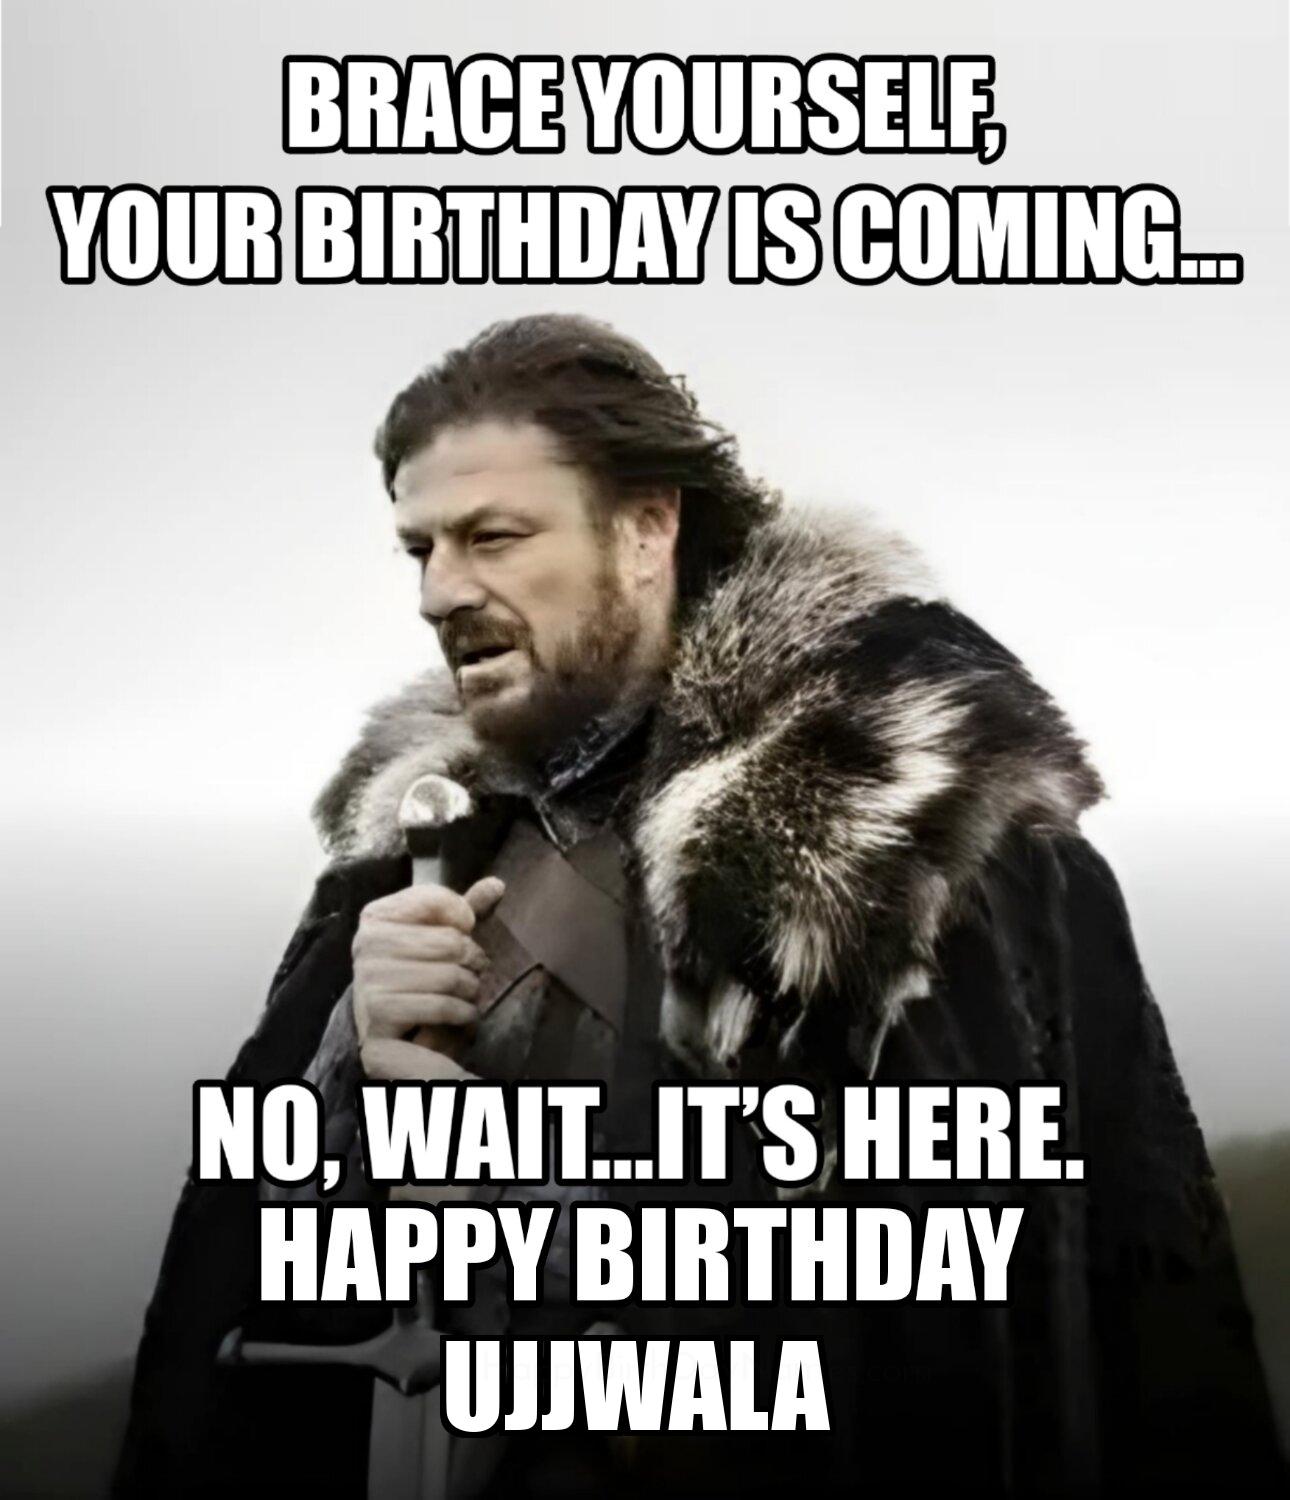 Happy Birthday Ujjwala Brace Yourself Your Birthday Is Coming Meme